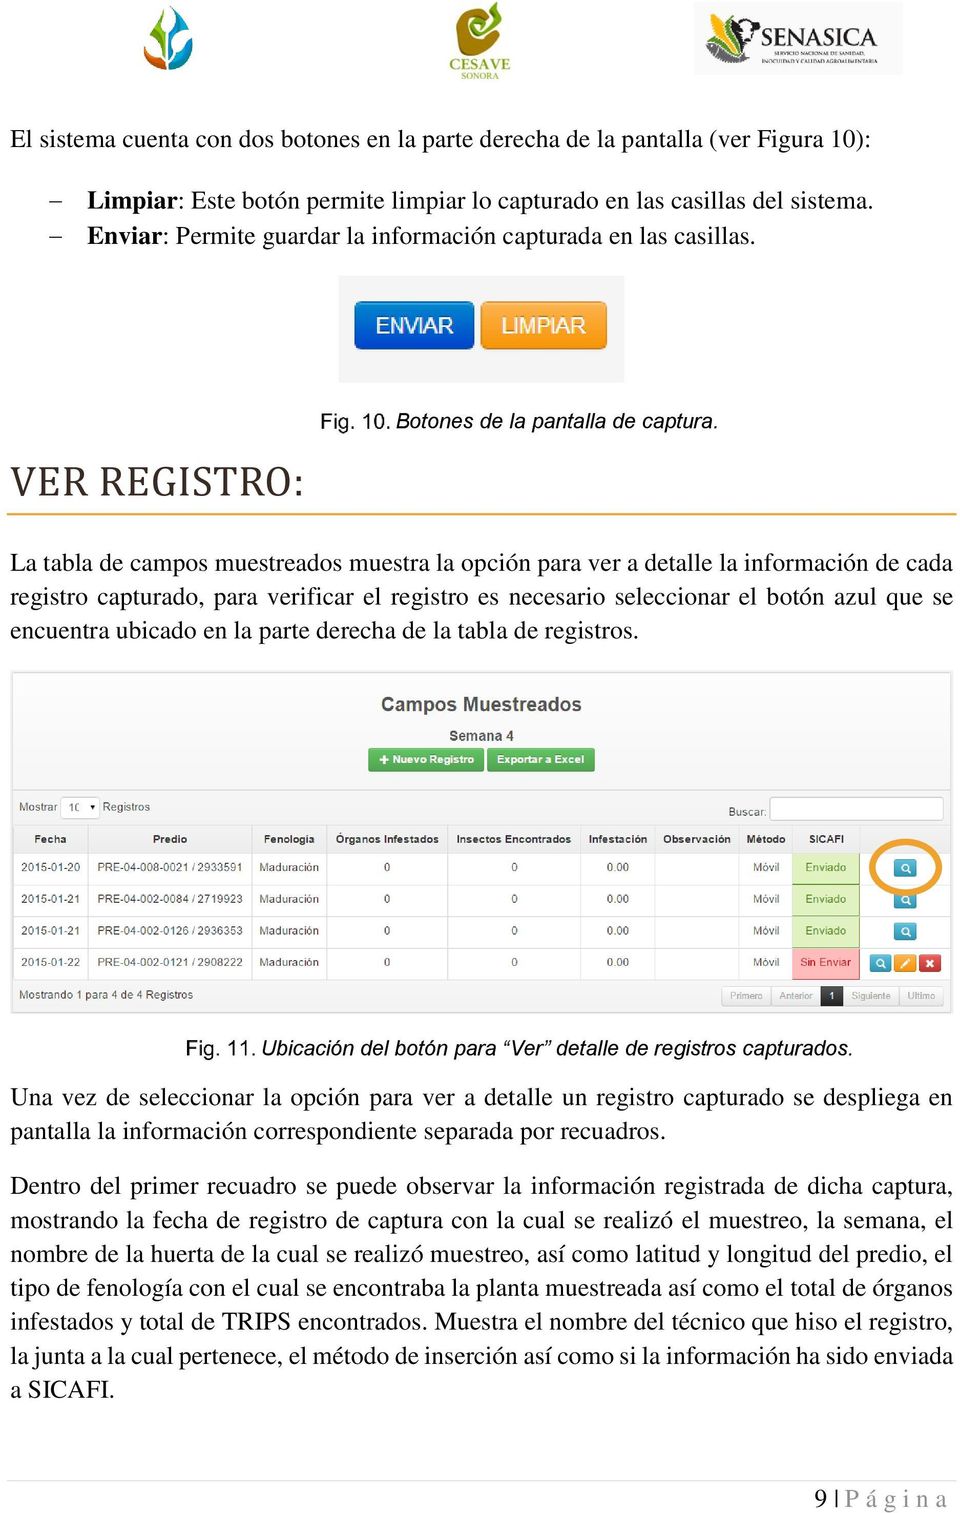 La tabla de campos muestreados muestra la opción para ver a detalle la información de cada registro capturado, para verificar el registro es necesario seleccionar el botón azul que se encuentra